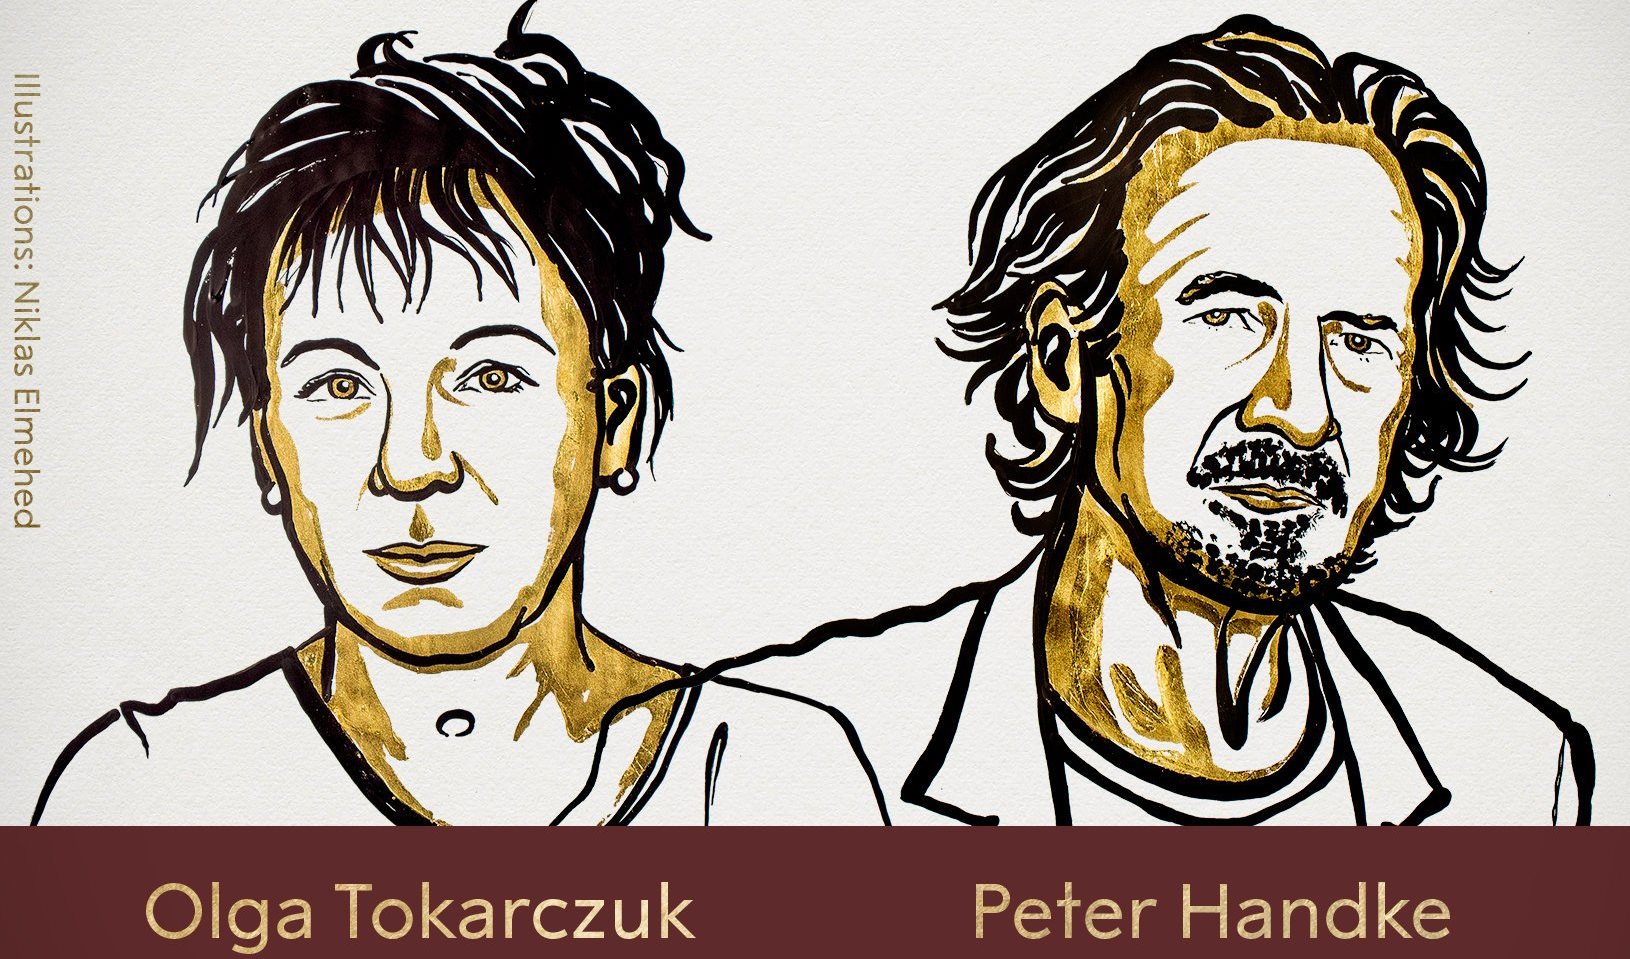 La escritora polaca Olga Tokarczuk y su colega austríaco Peter Handke son los ganadores del Nobel de Literatura 2018 y 2019. (Foto Prensa Libre: Premio Nobel)